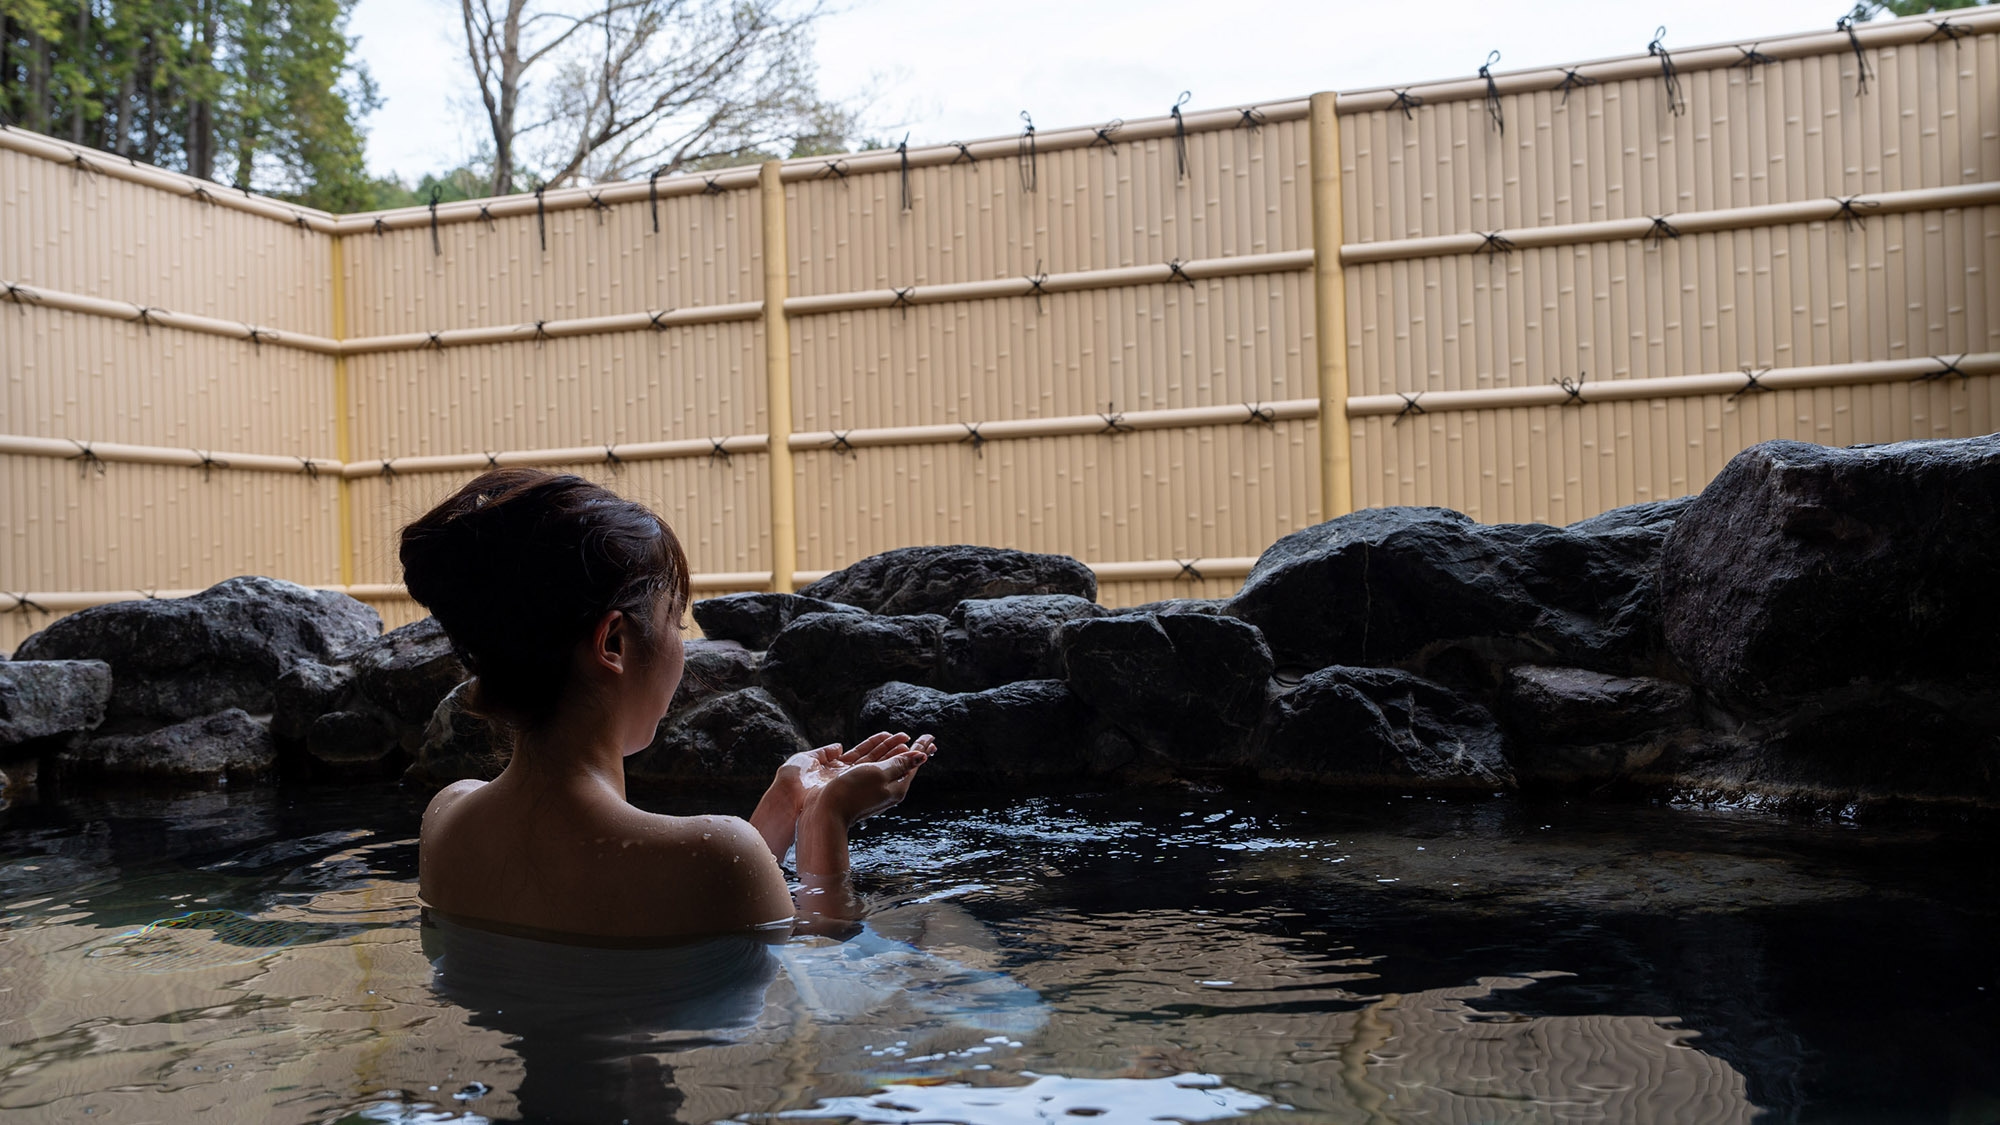 【カップル、ご夫婦限定】お二人の京都旅行をさらに素敵に。豪華特典付プラン《信楽焼の客室露天風呂付》